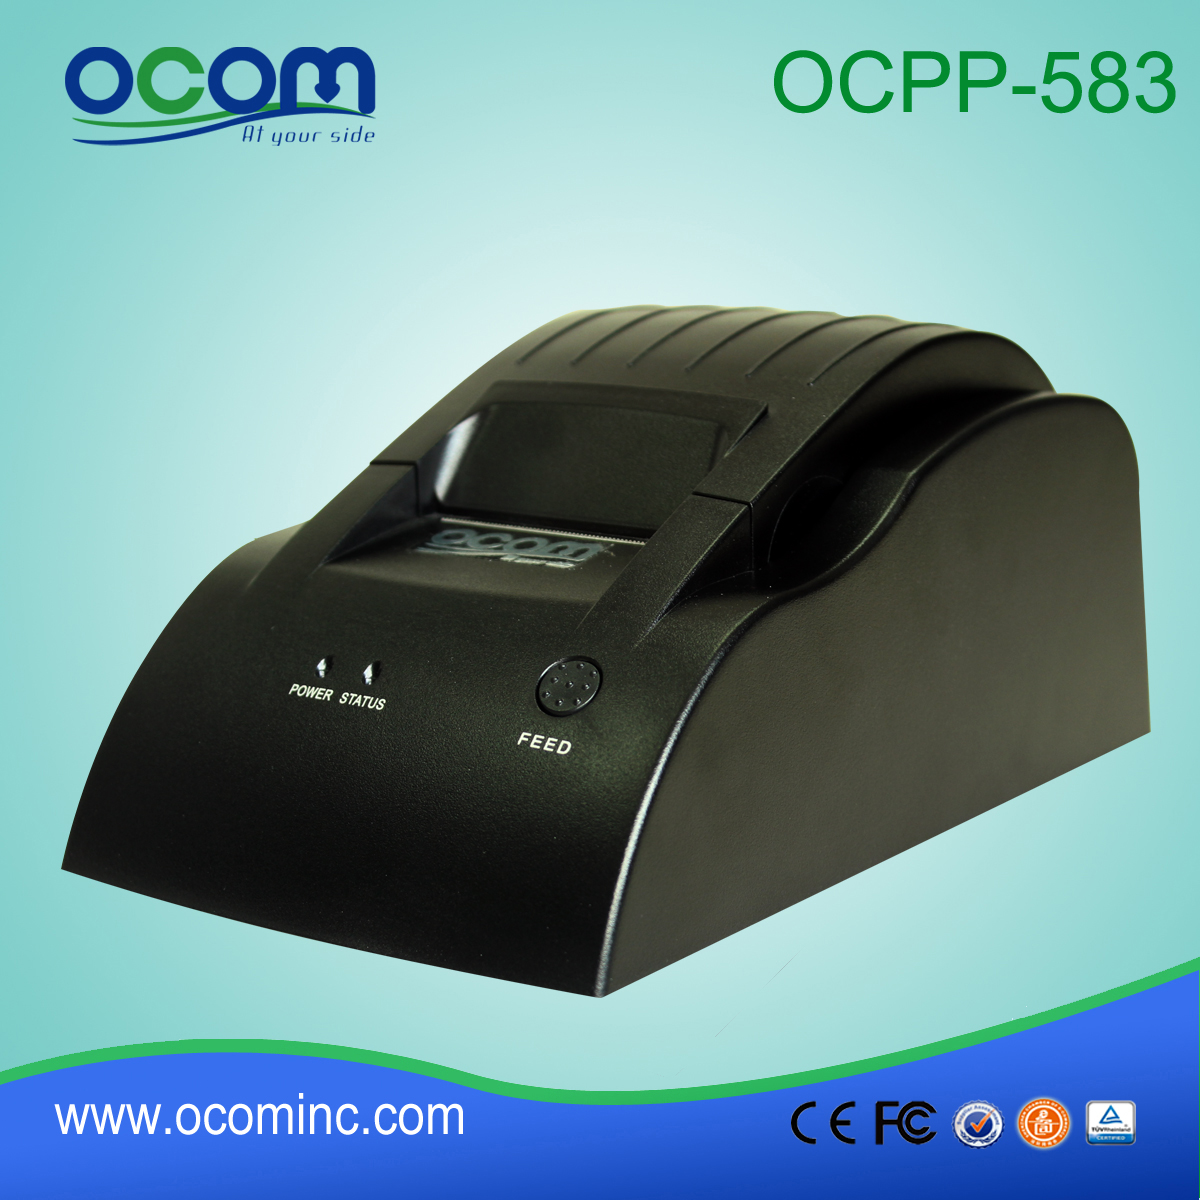 Baixo custo de 58 milímetros conta POS impressora de OCPP-583